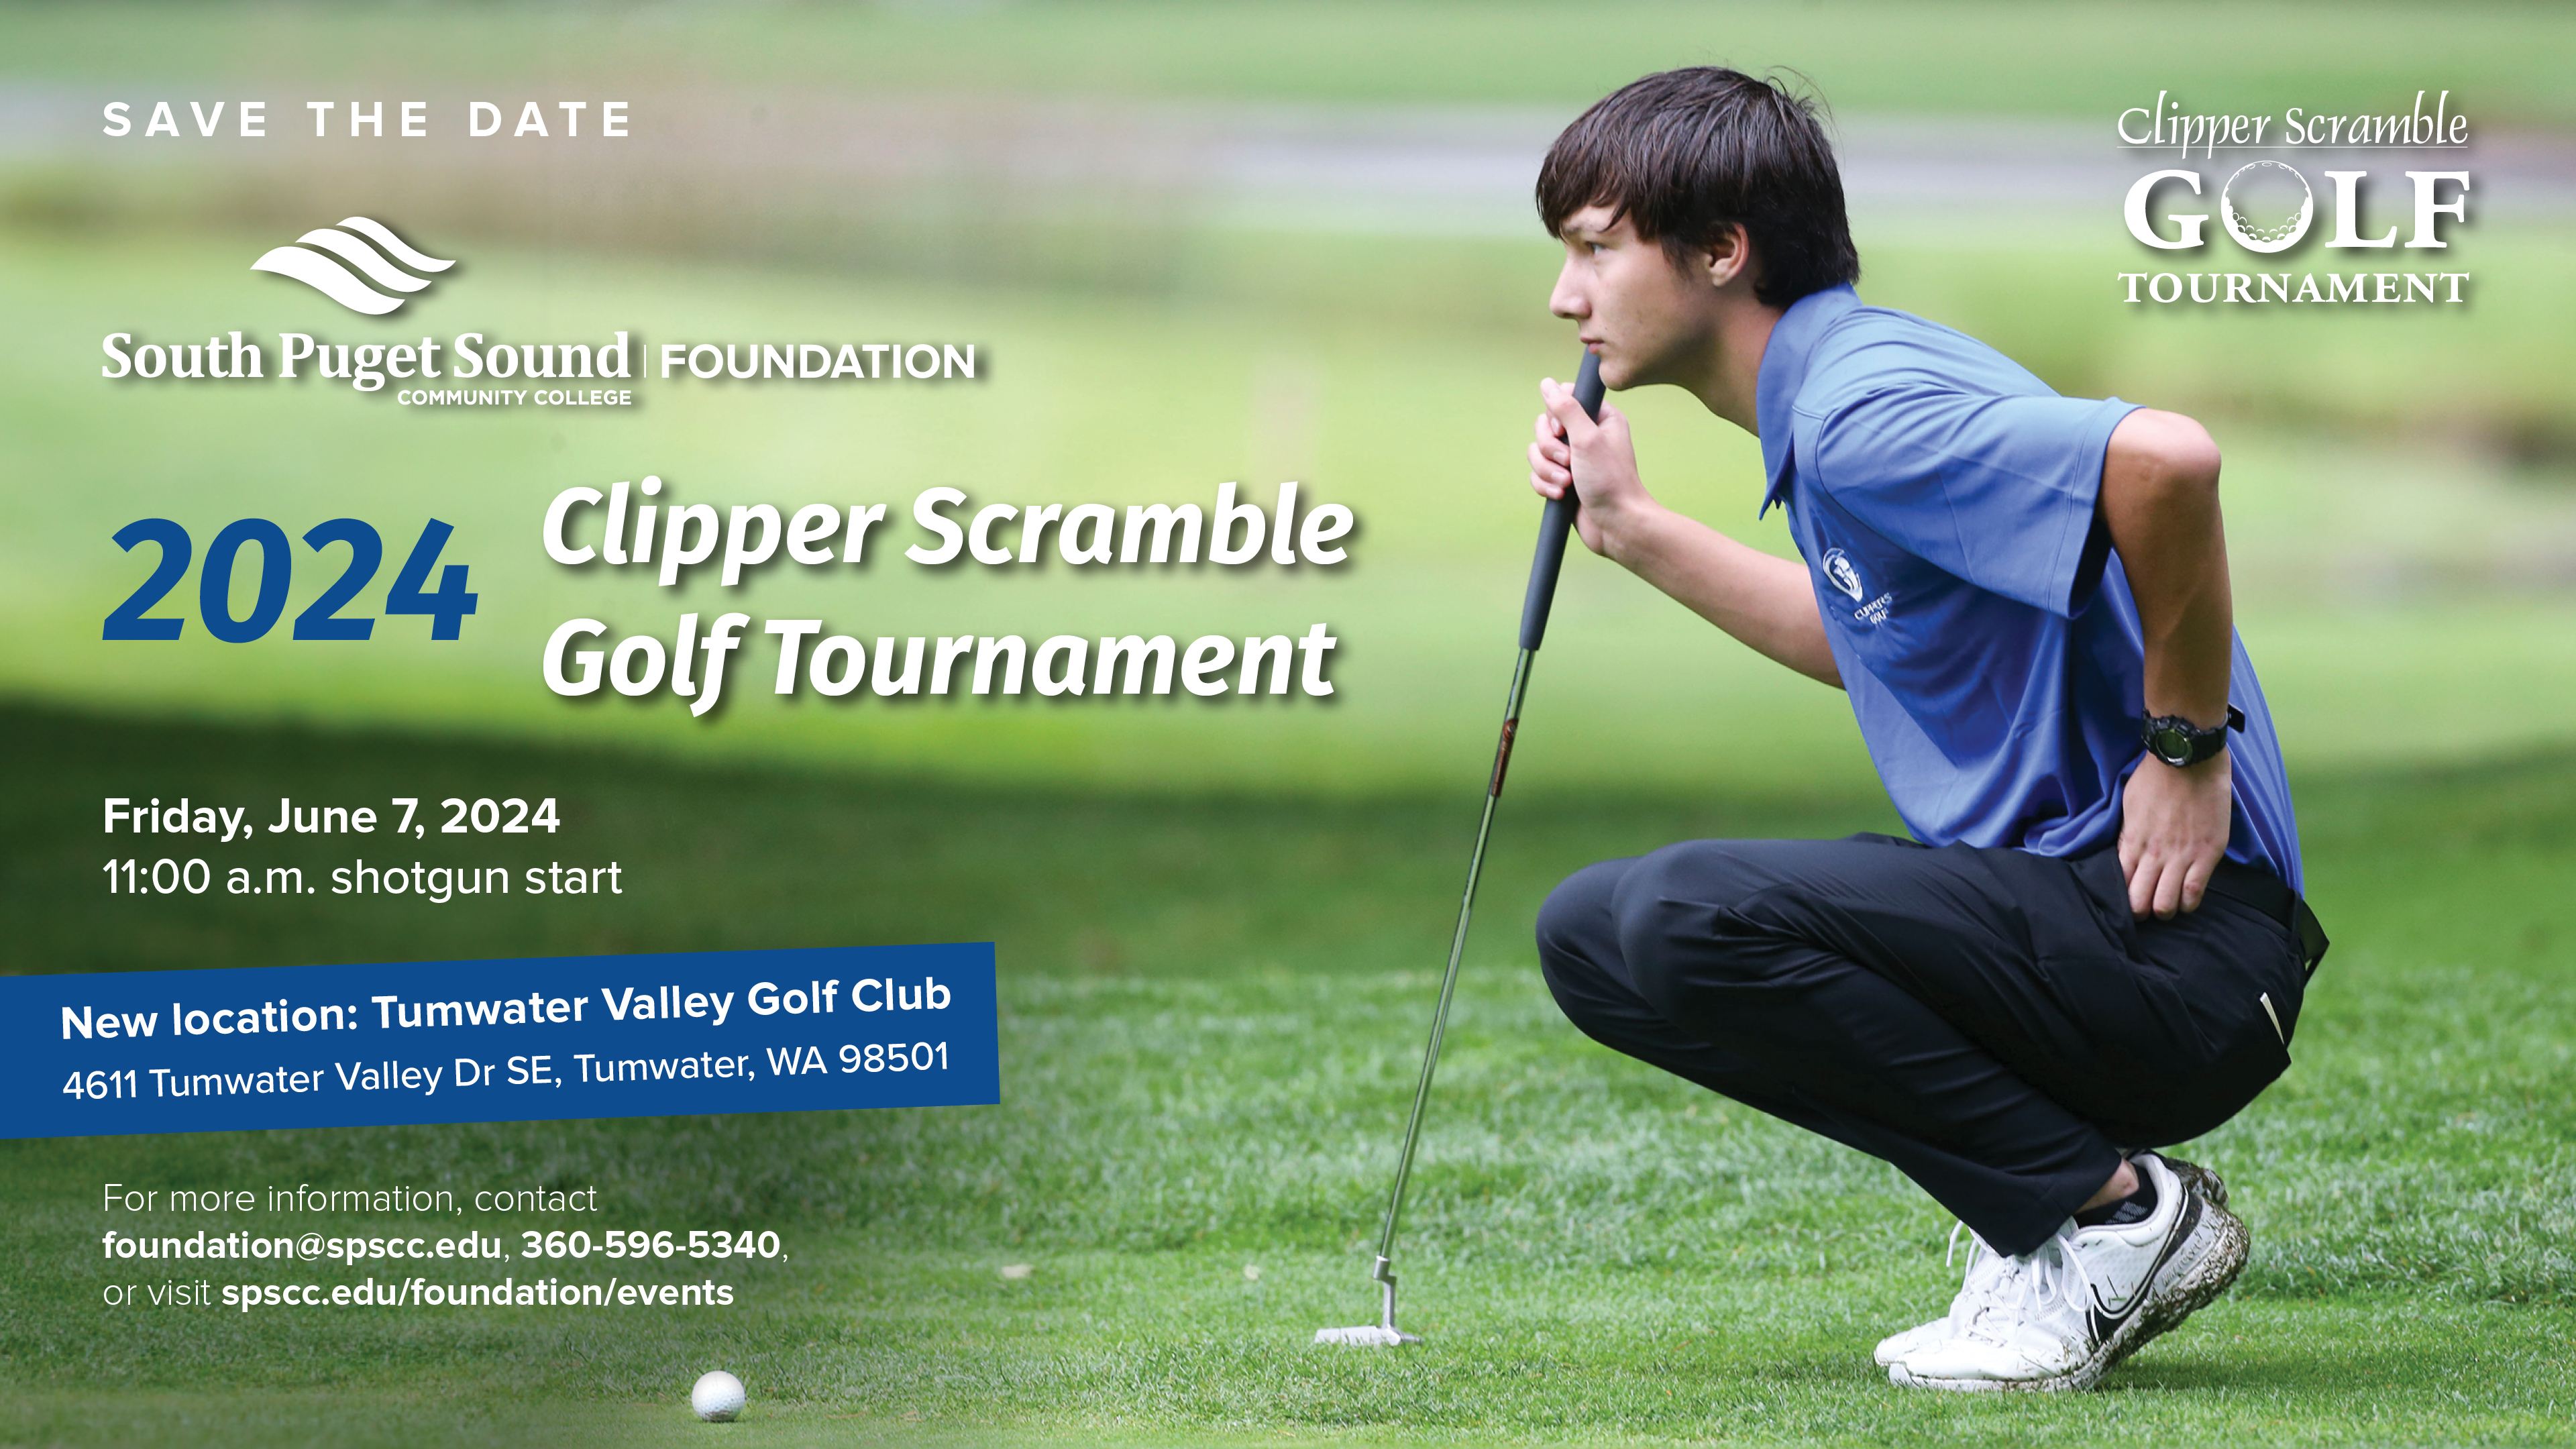 Clipper Scramble Golf Tournament